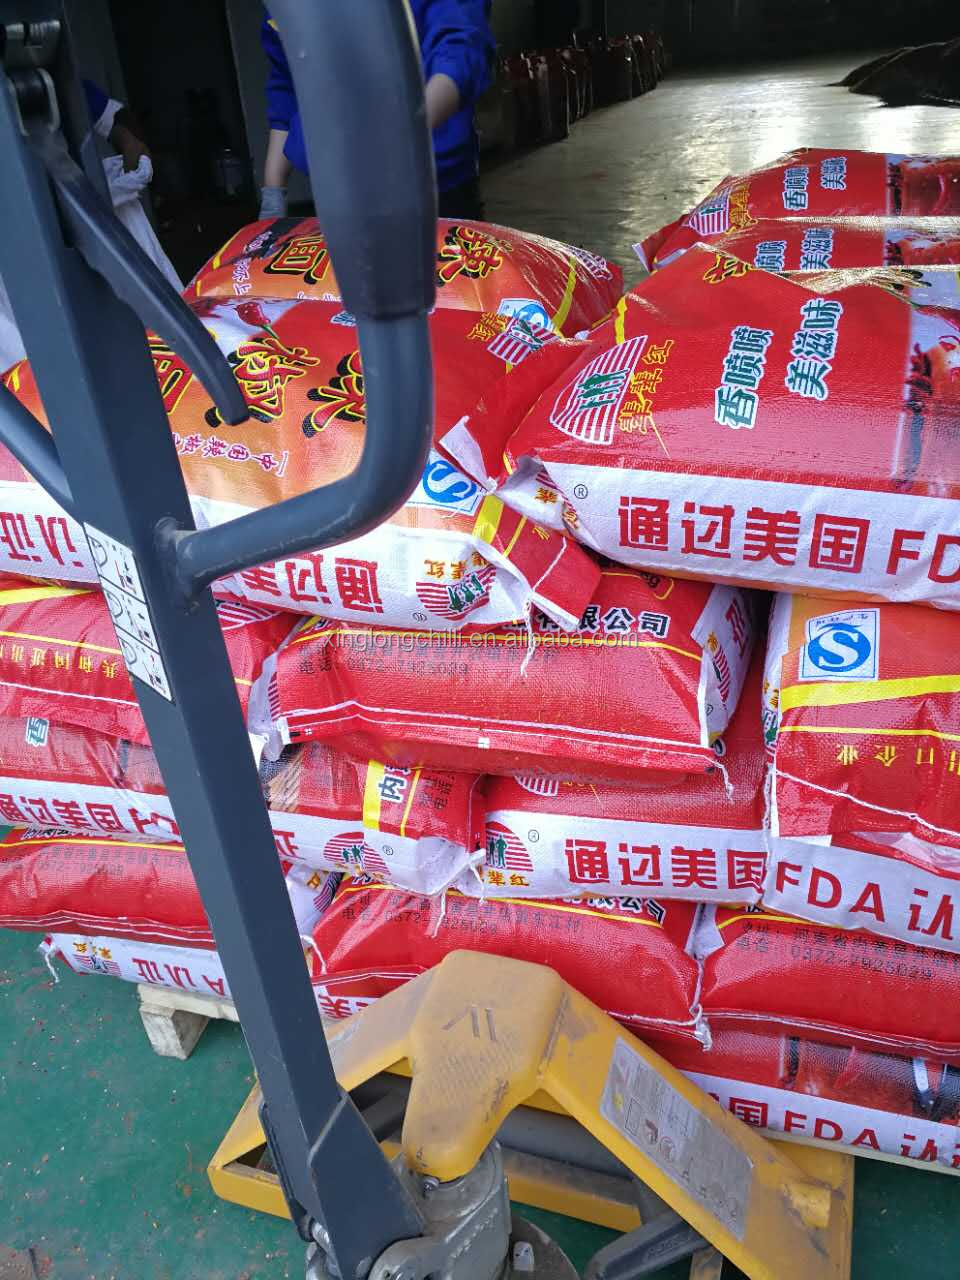 Seasoning distributor buys red chilli powder price 1 kg